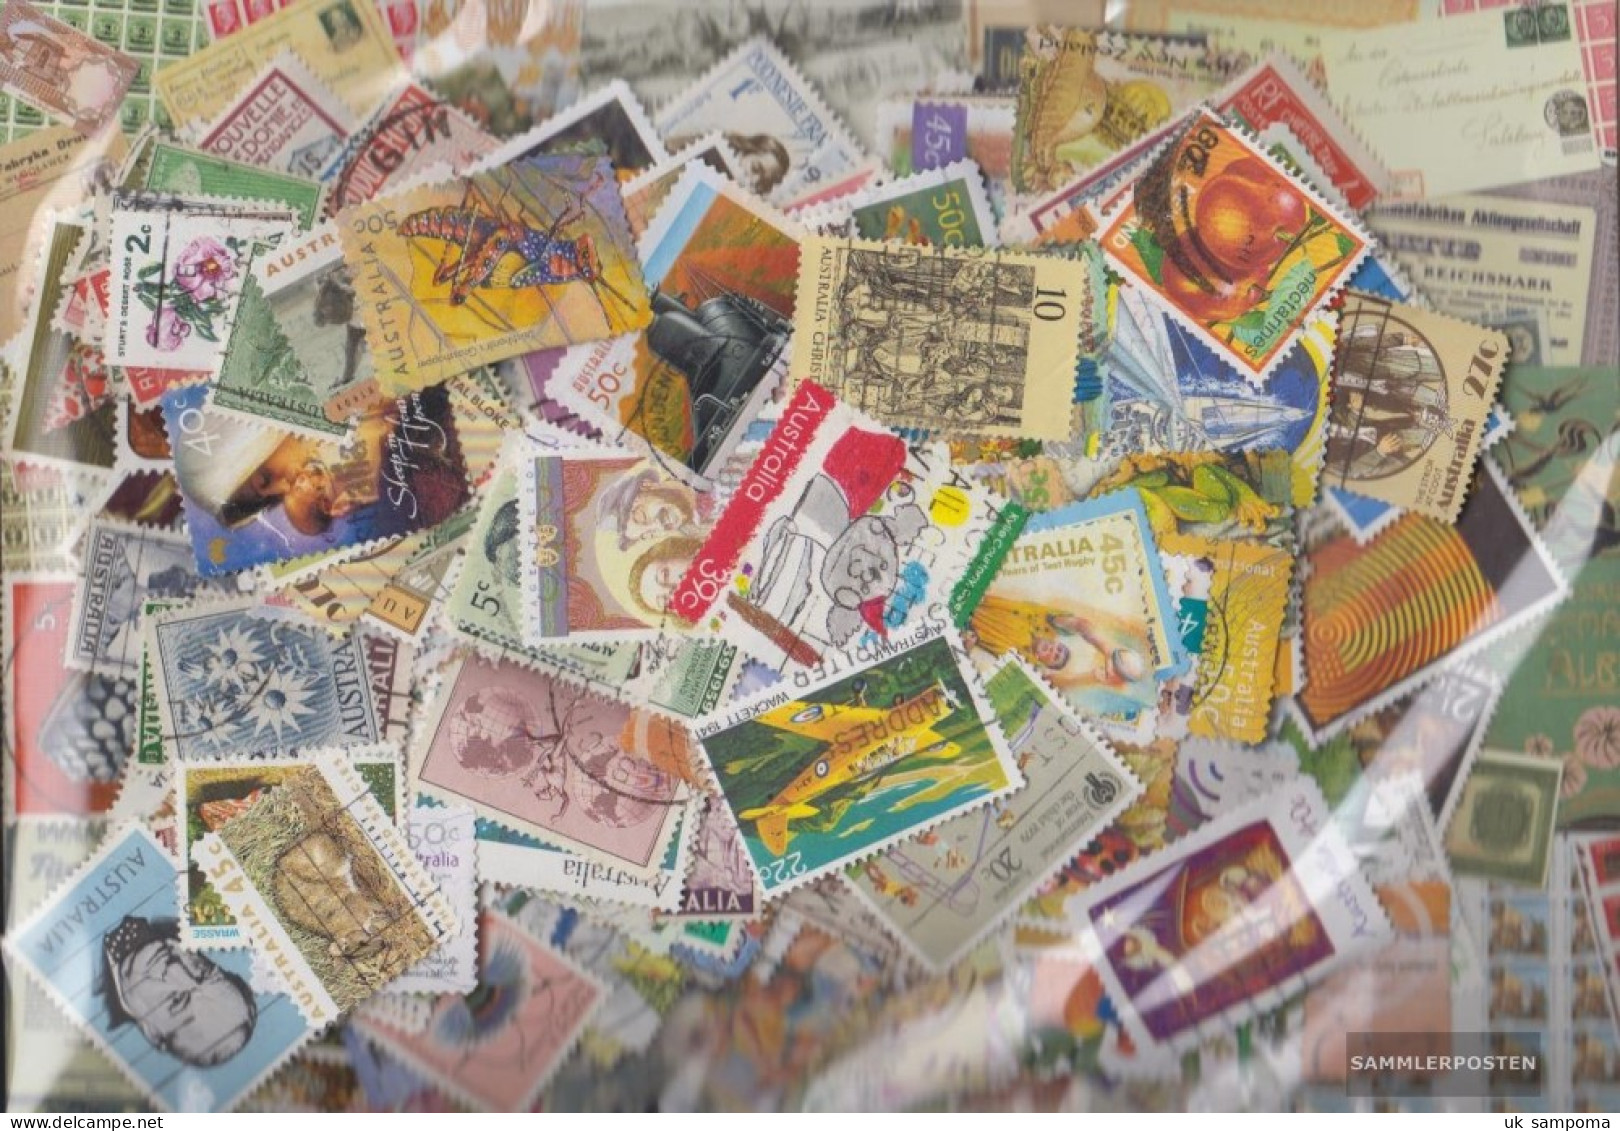 Australia 1.000 Different Stamps  Oceania - Colecciones